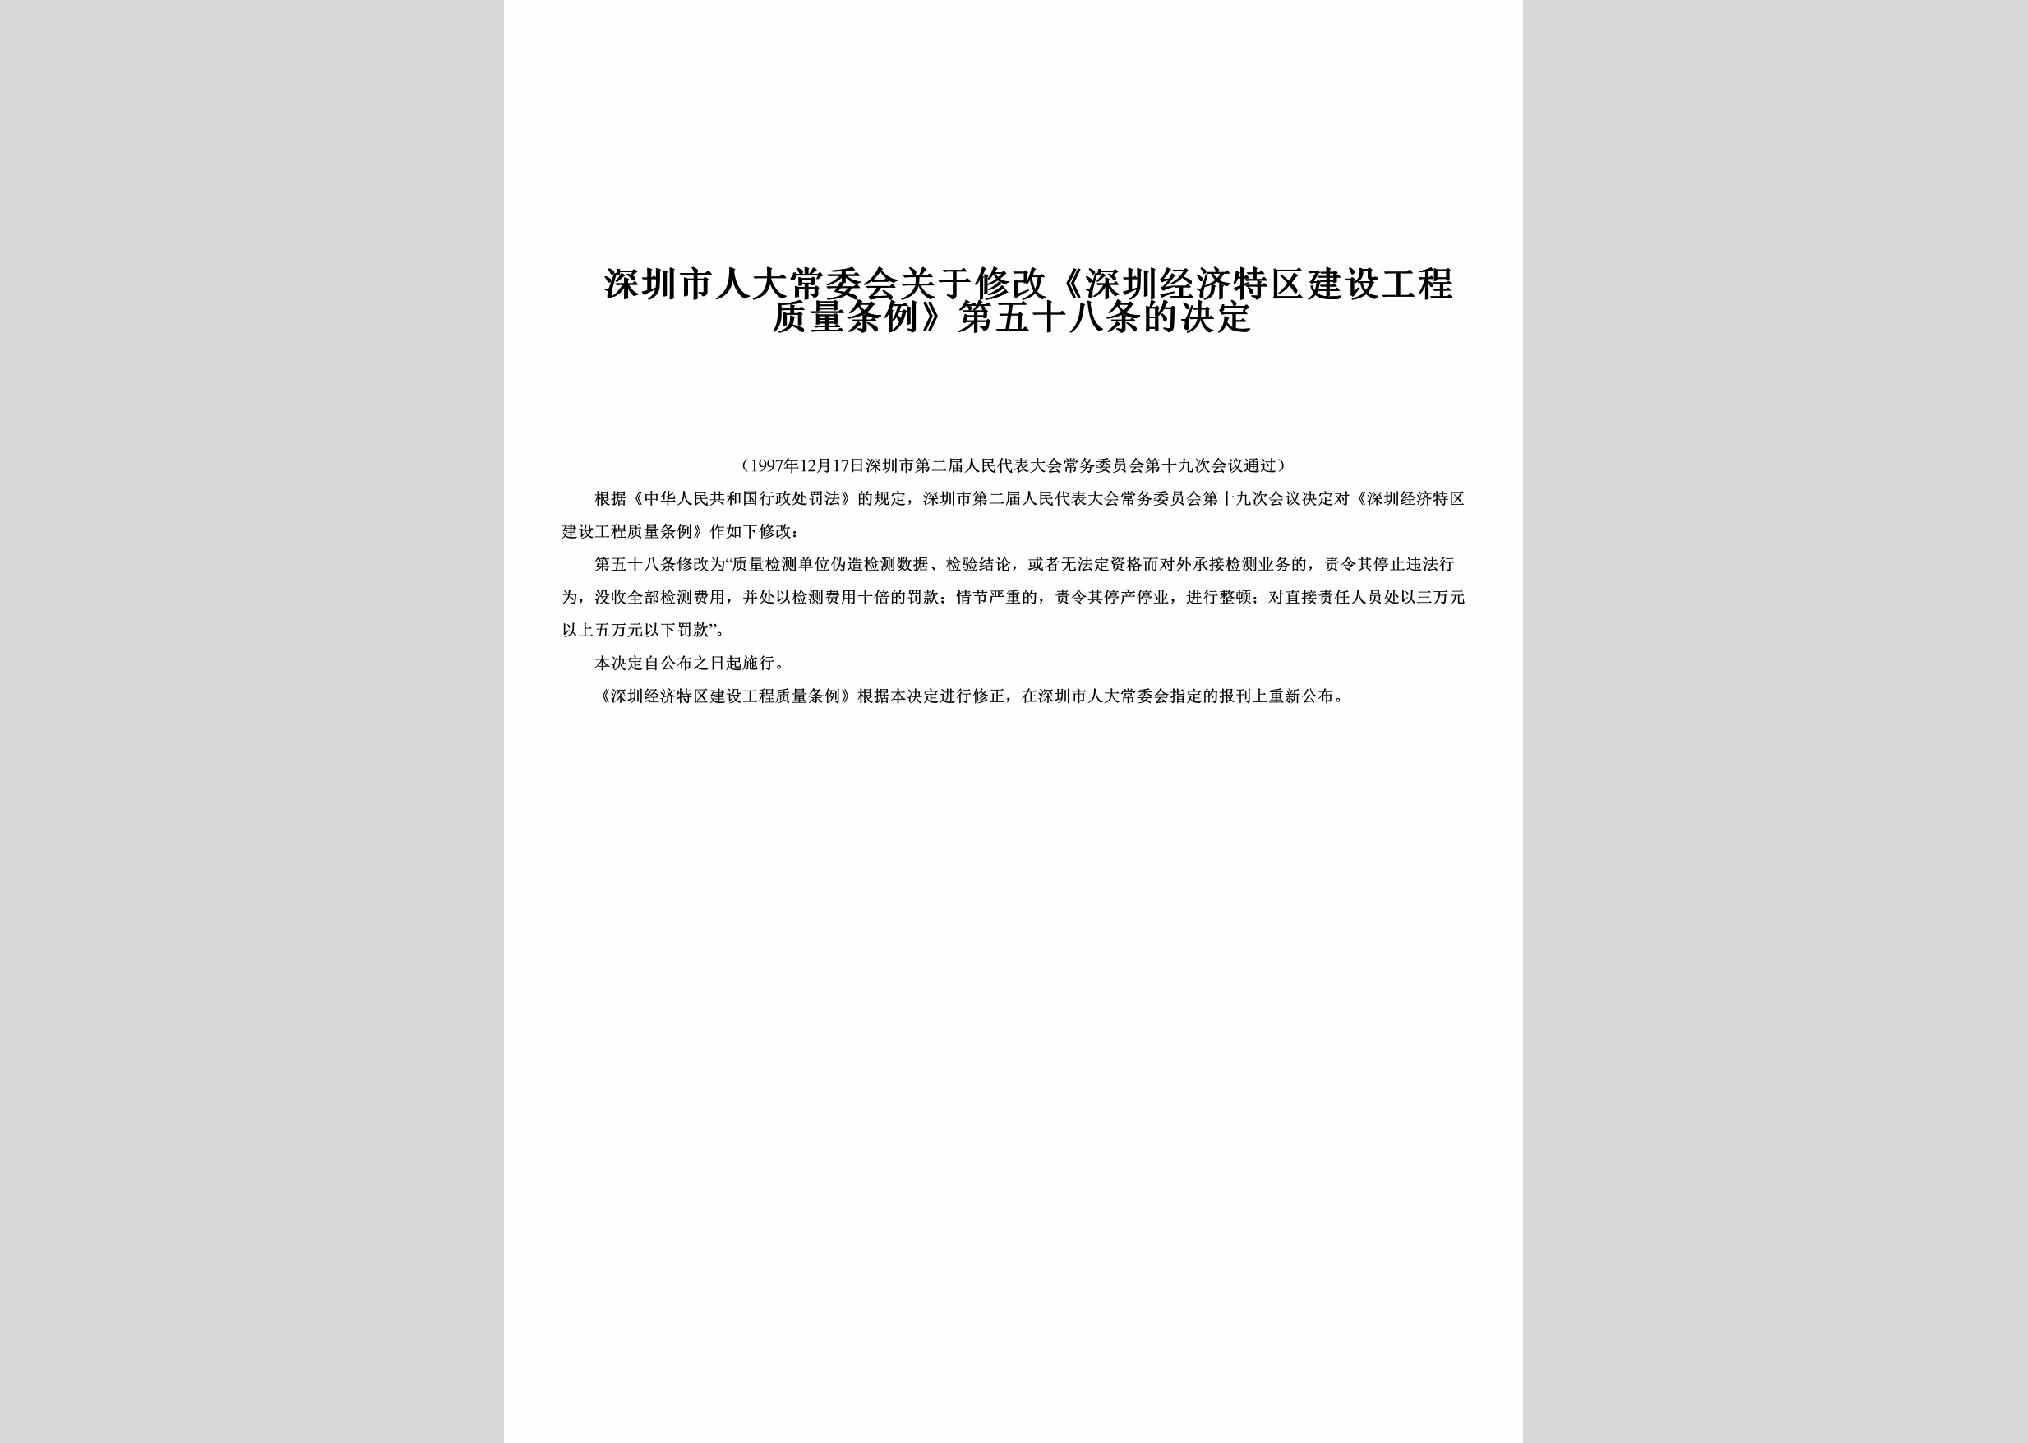 GD-GCZLTLJD-1997：关于修改《深圳经济特区建设工程质量条例》第五十八条的决定